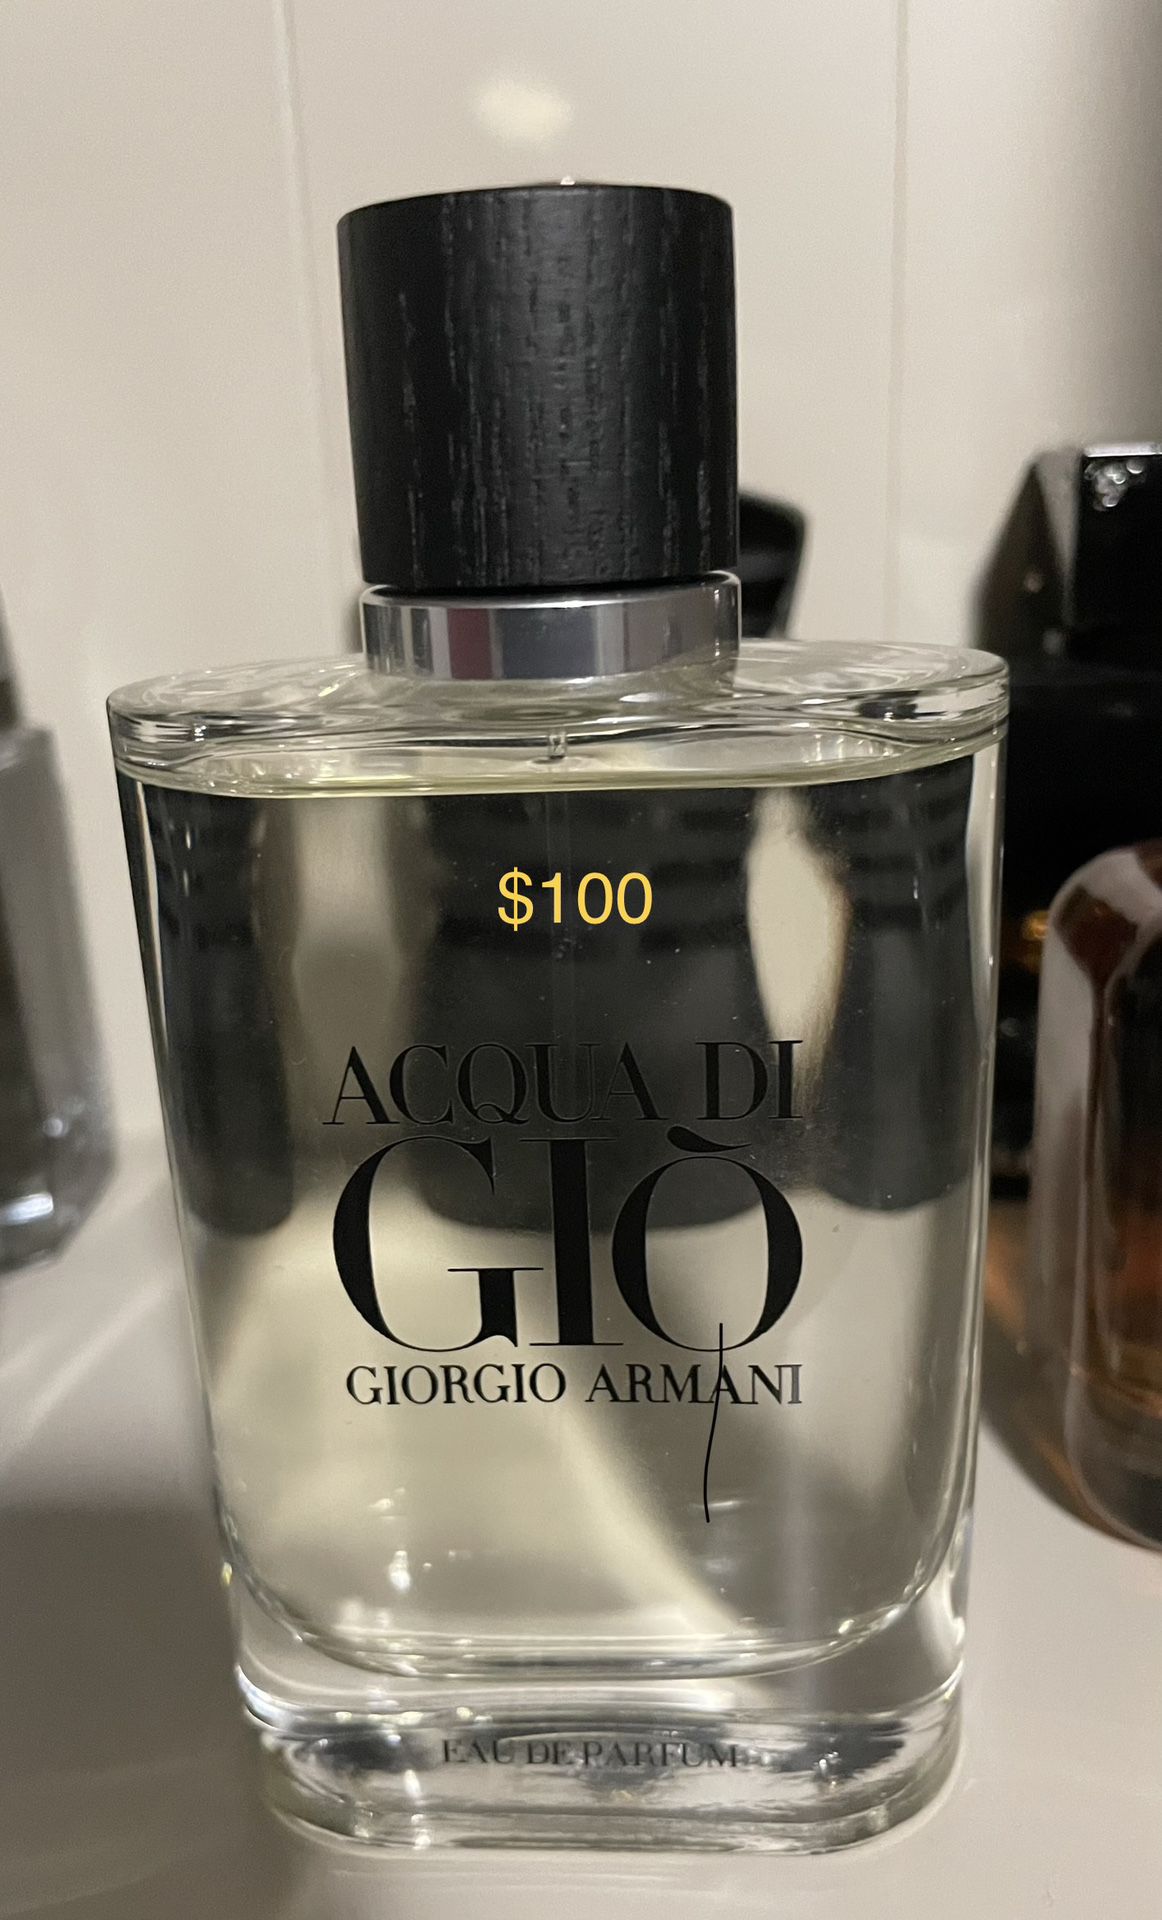 New Giorgio Armani Acqua di Giò Eau de Parfum Cologne 4.2 Oz